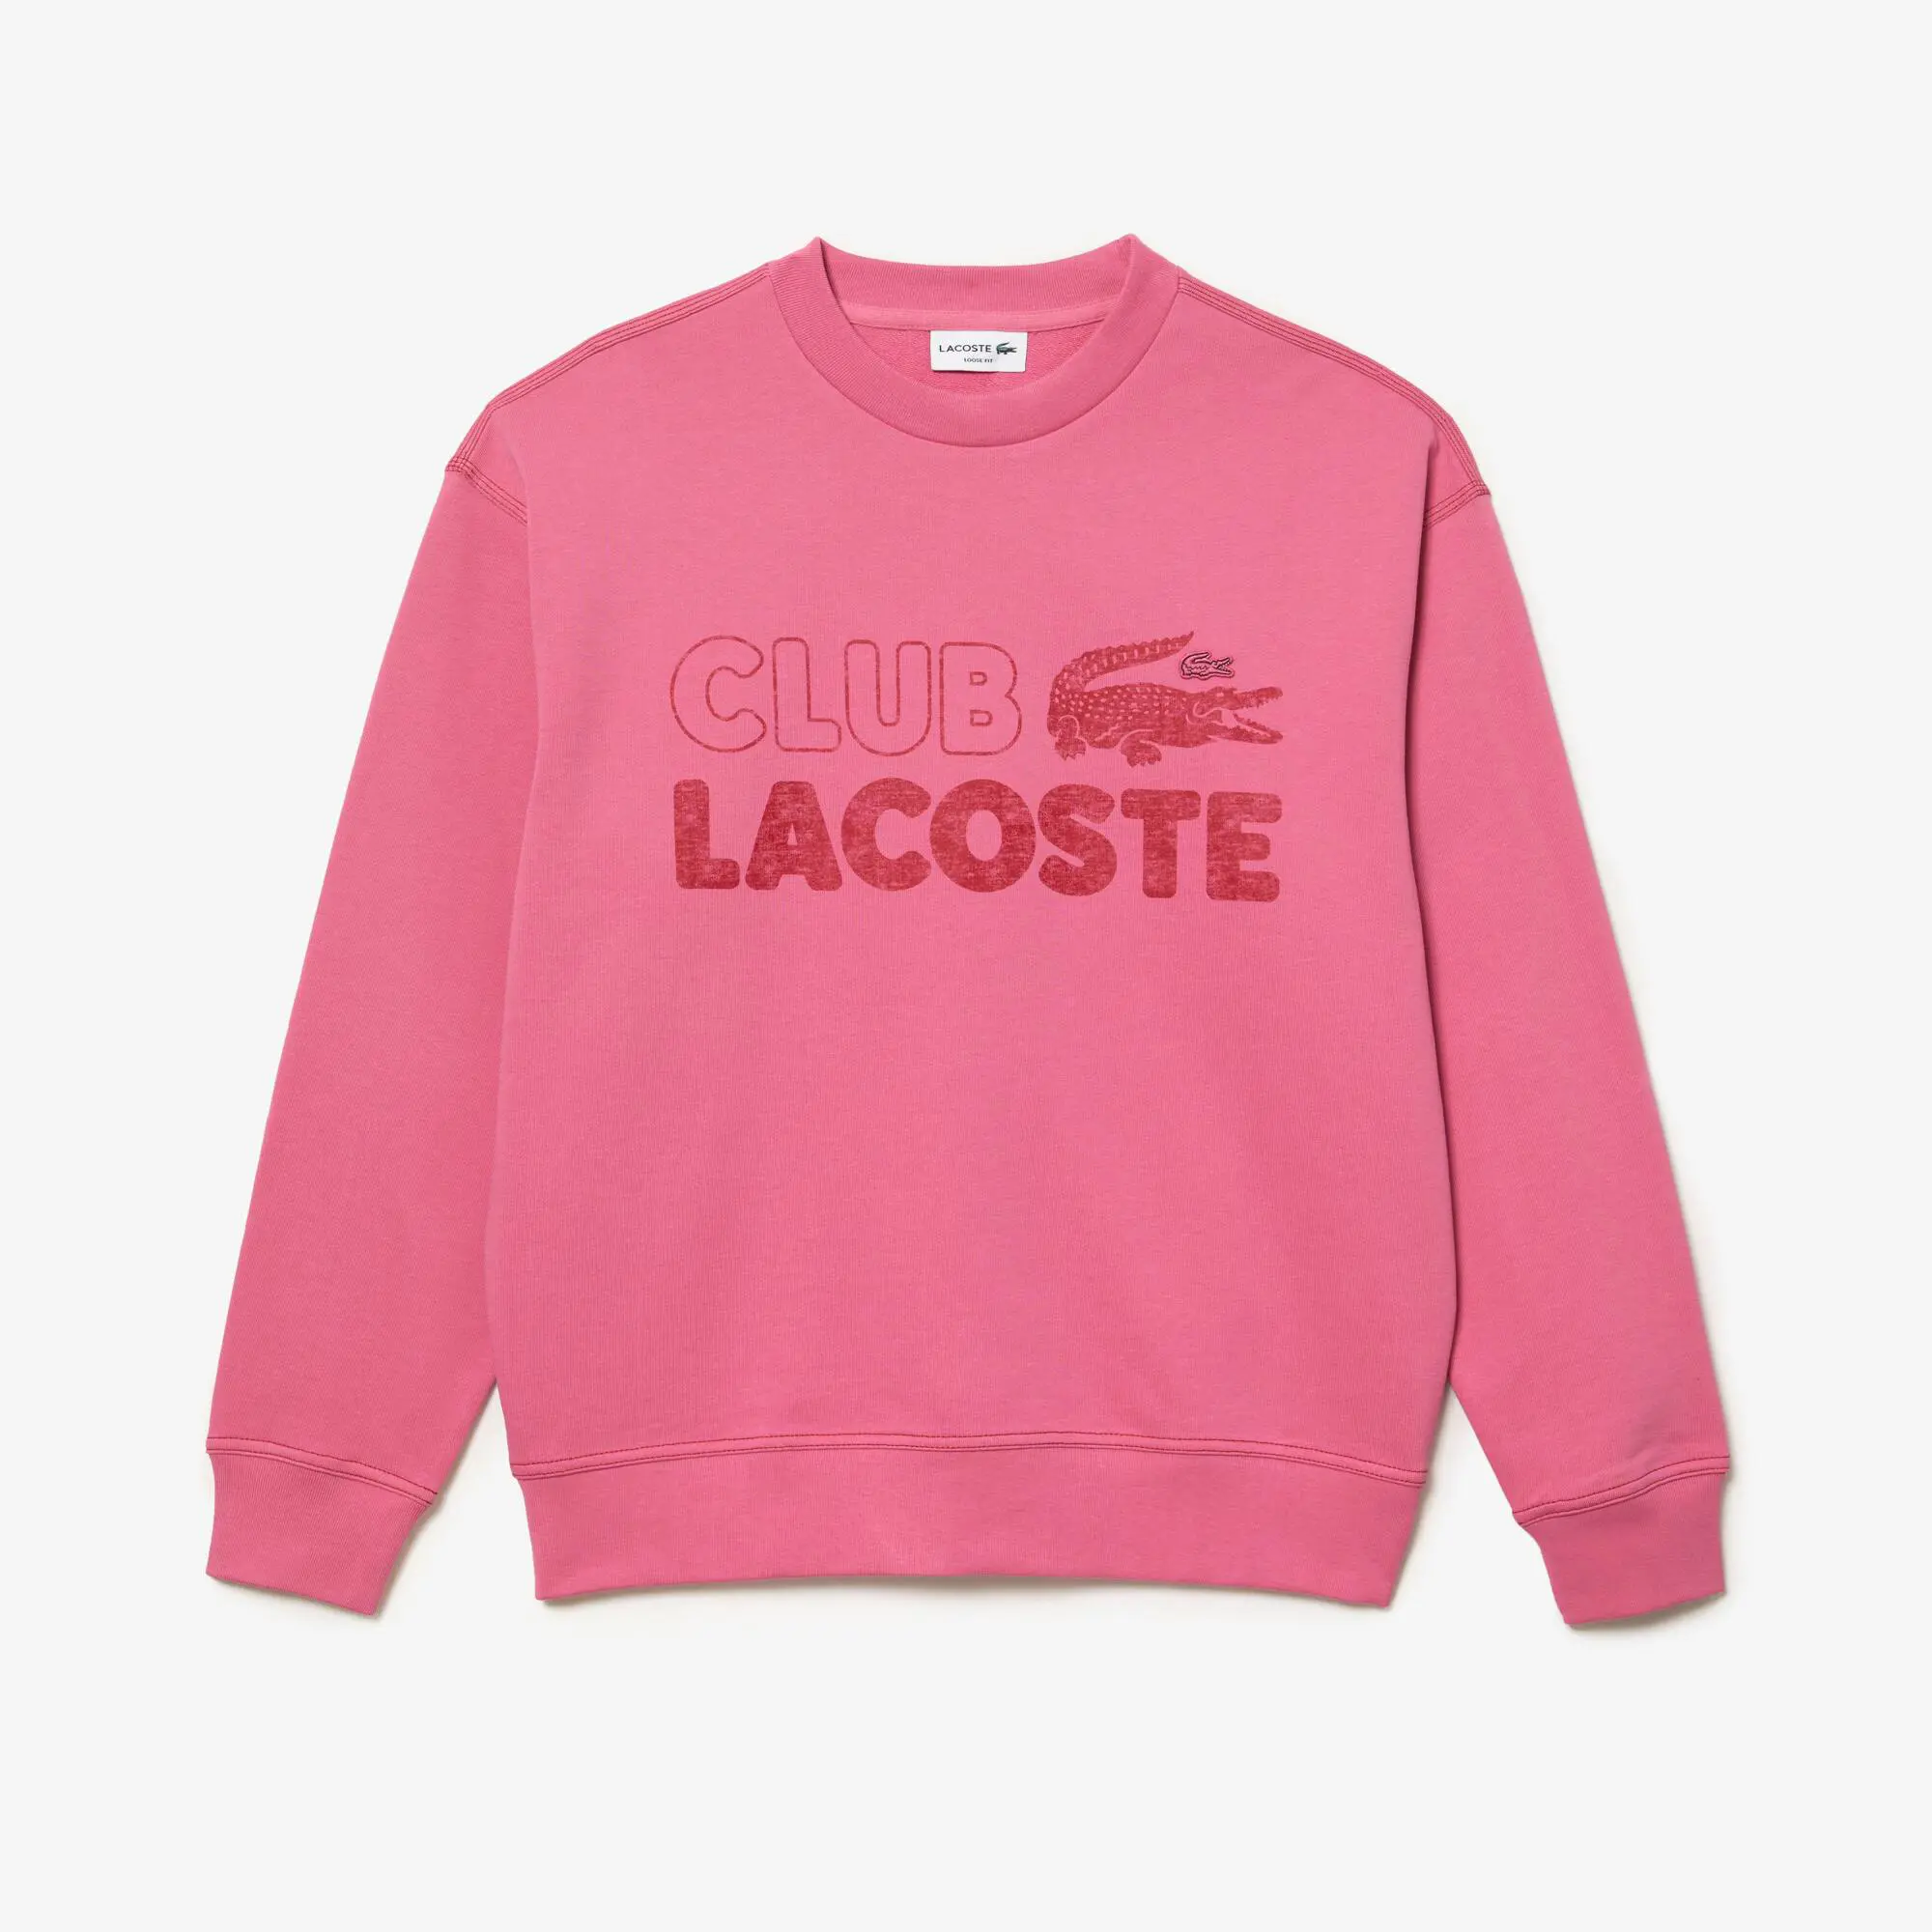 Lacoste Men’s Lacoste Round Neck Loose Fit Vintage Print Sweatshirt. 2